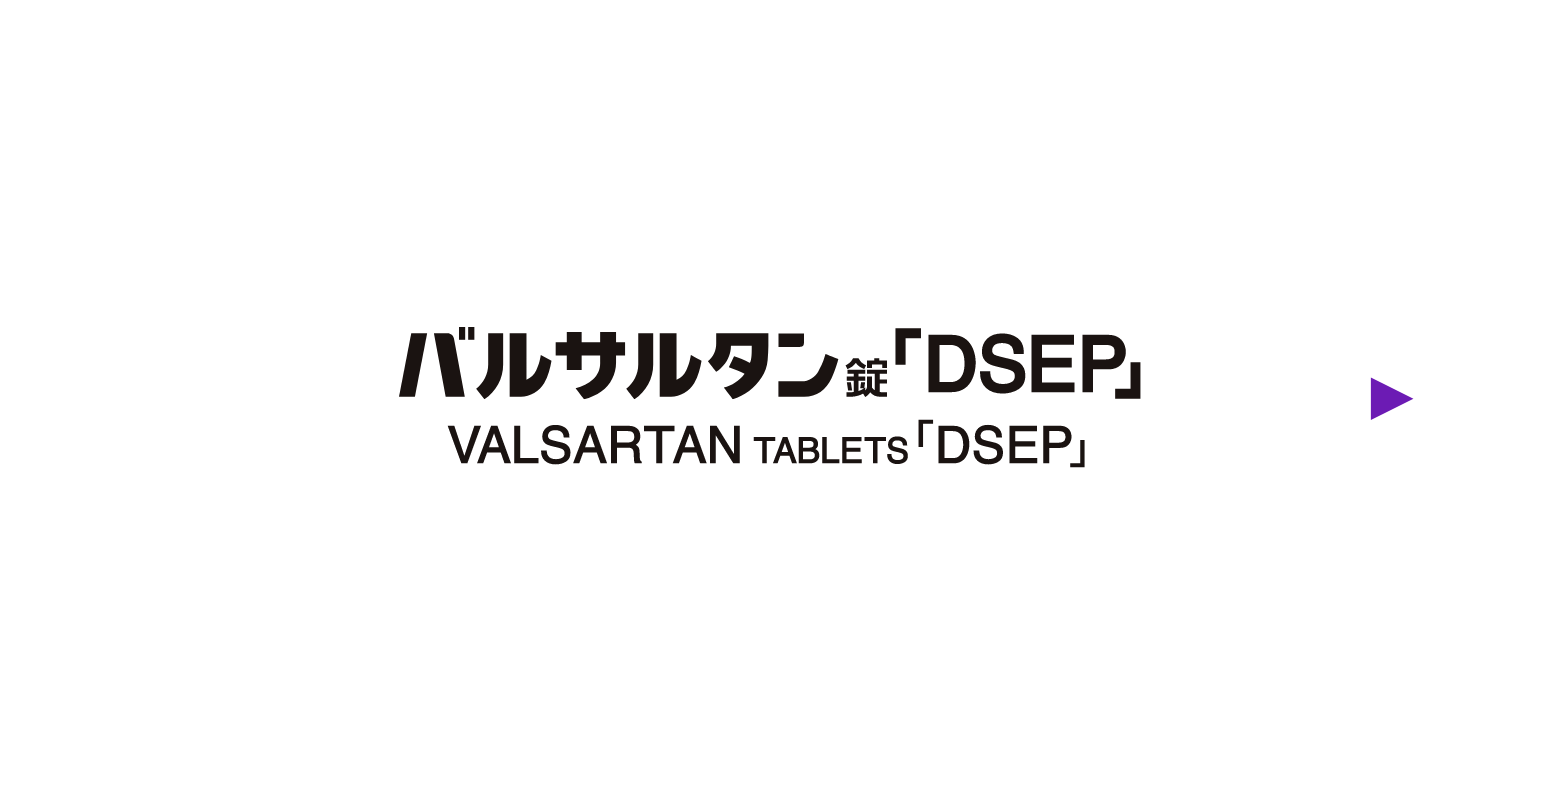 バルサルタン錠「DSEP」